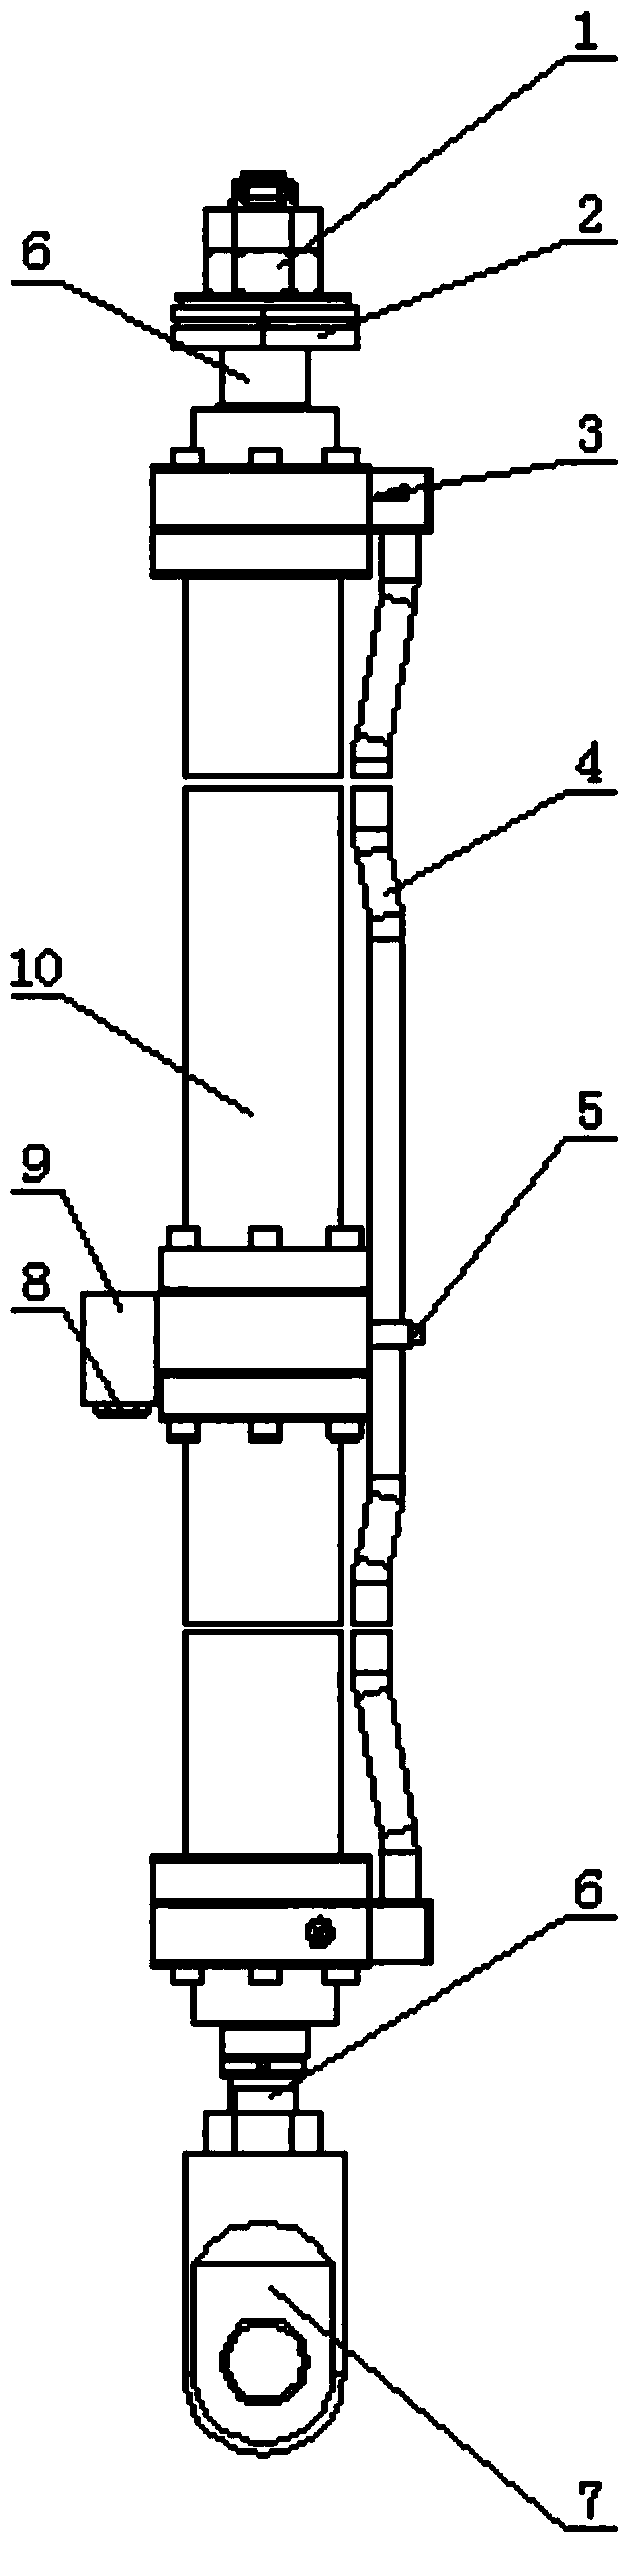 A hydraulic pumping unit